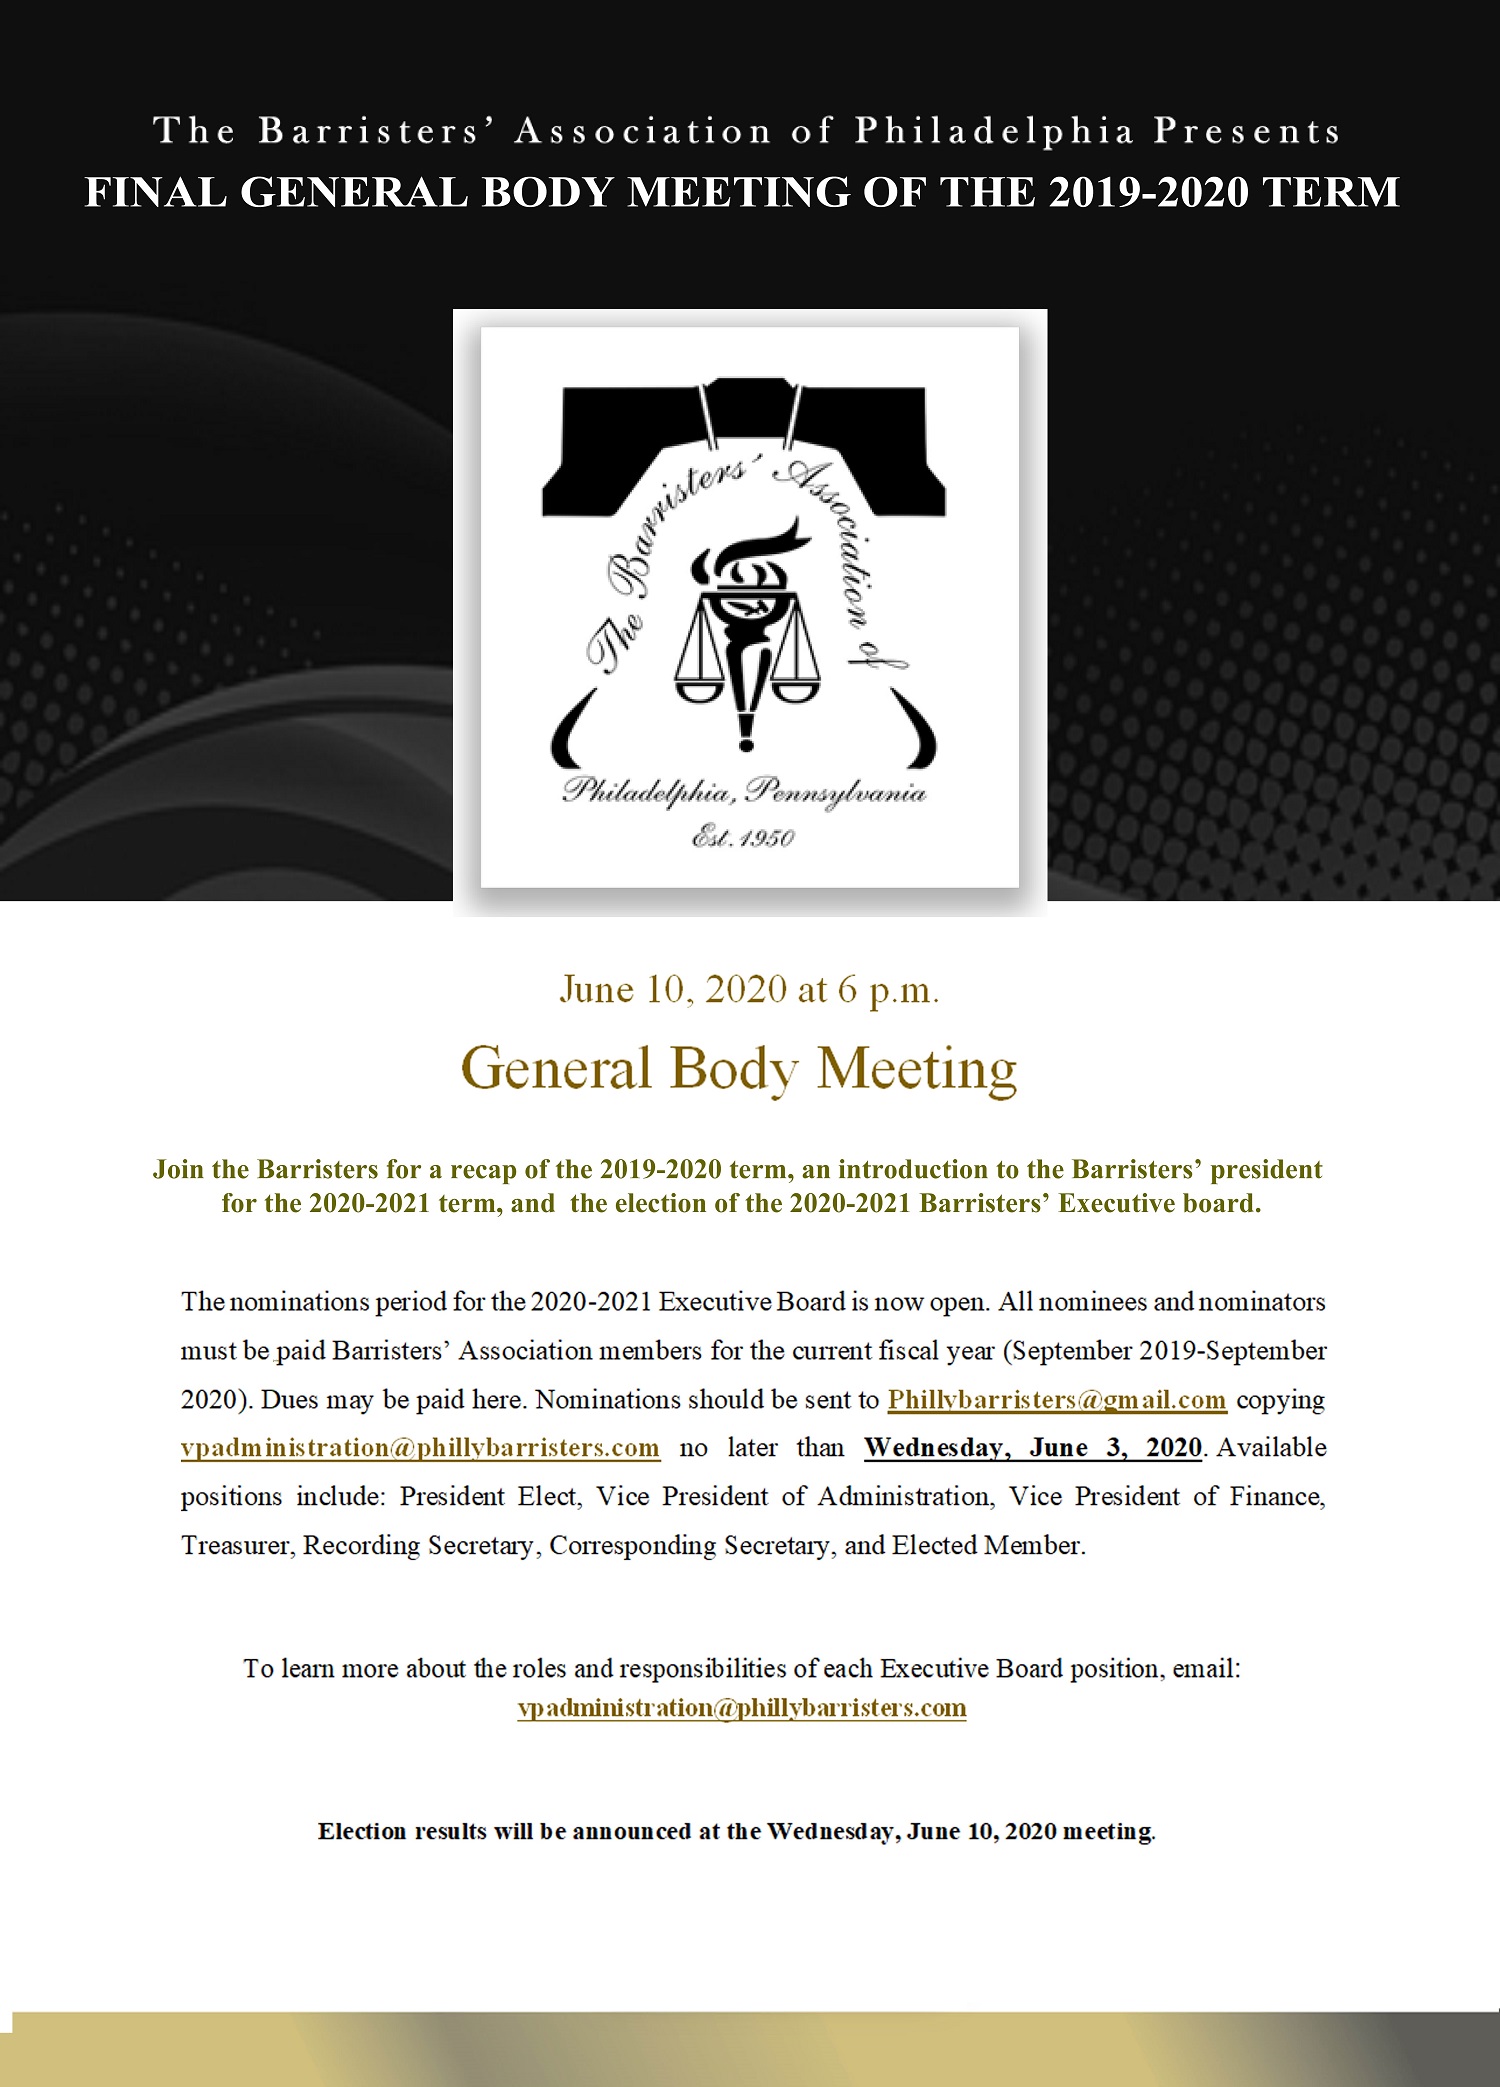 June General Body Meeting